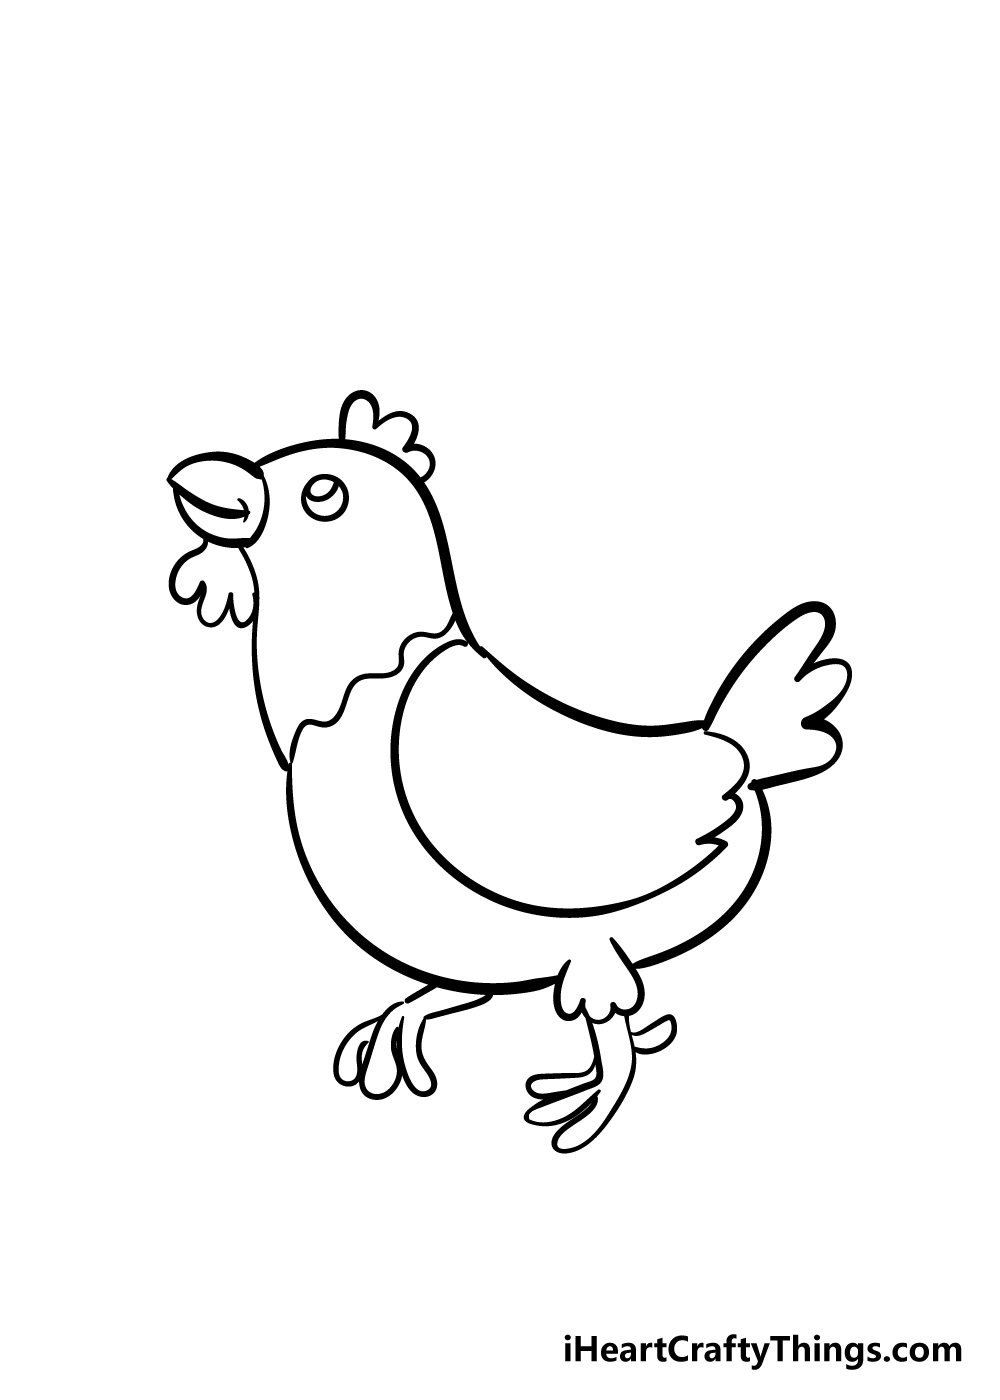 Chicken6 - Cách vẽ con gà đơn giản đẹp với 8 bước cơ bản hướng dẫn chi tiết